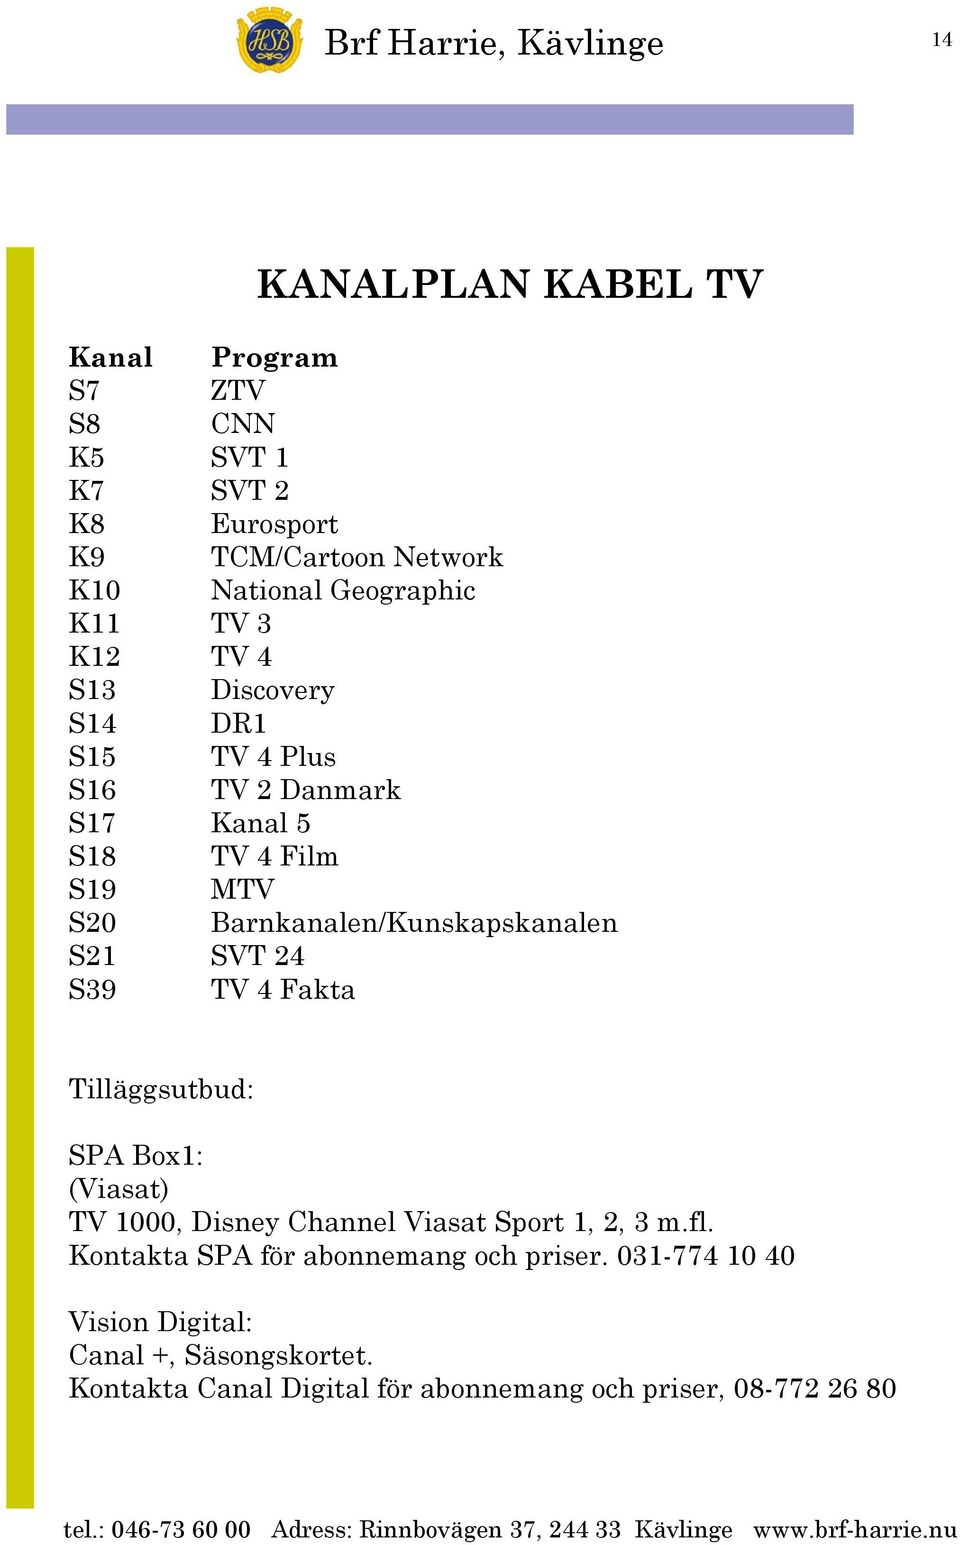 S21 SVT 24 S39 TV 4 Fakta Tilläggsutbud: SPA Box1: (Viasat) TV 1000, Disney Channel Viasat Sport 1, 2, 3 m.fl.